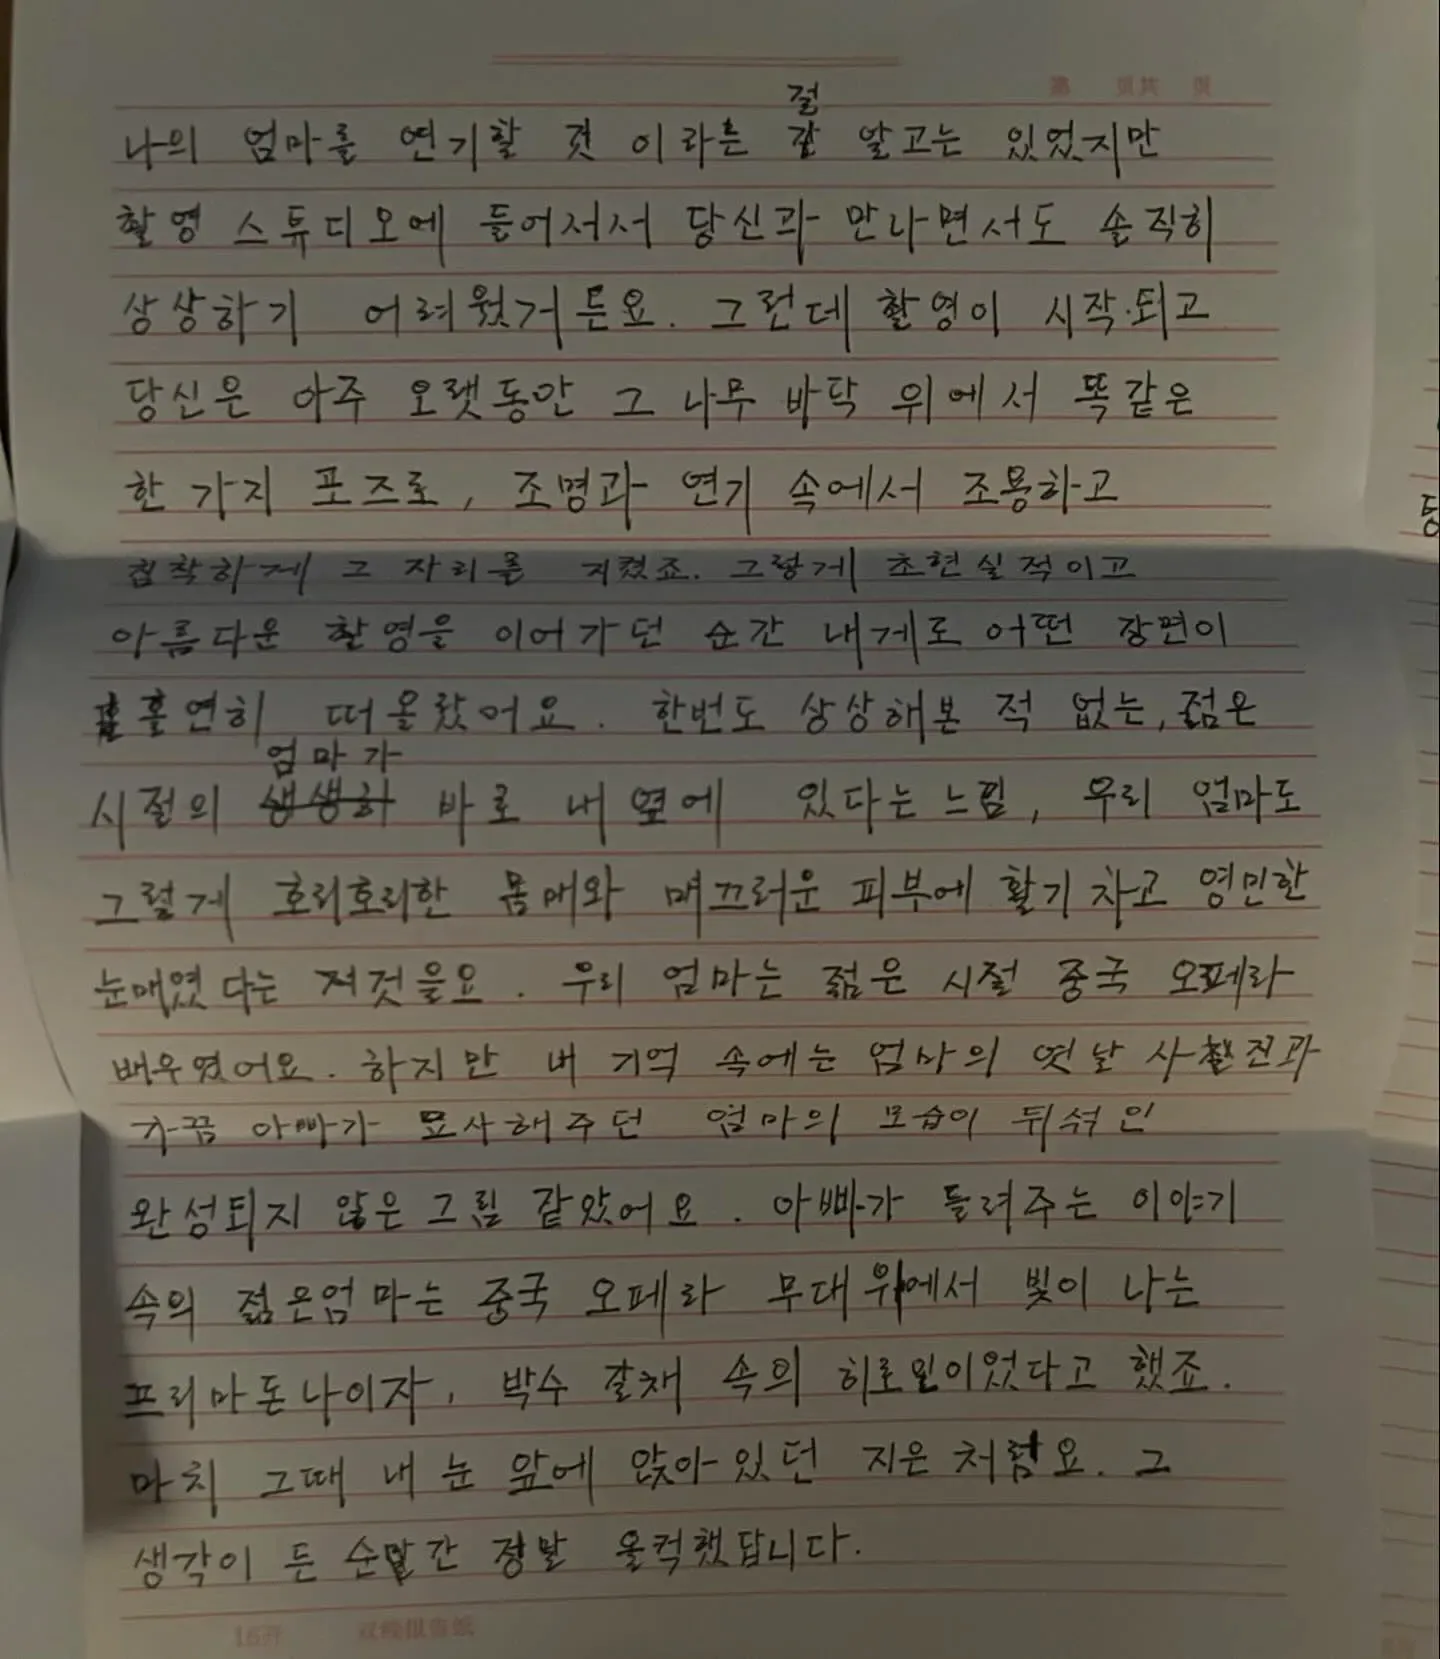 탕웨이의 손편지